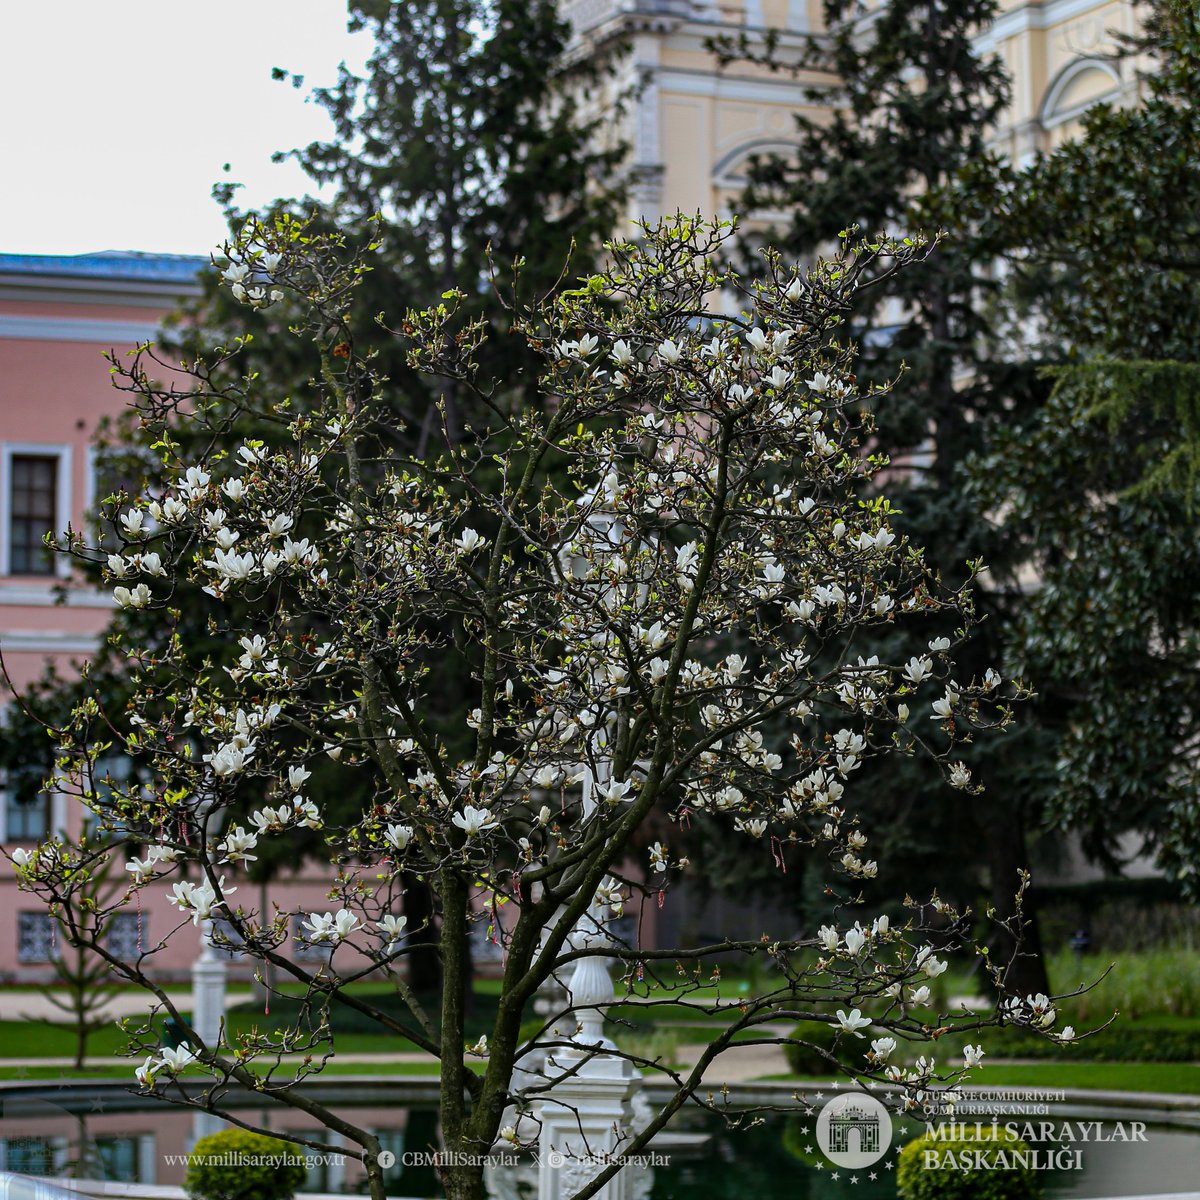 Dolmabahçe Sarayı’nı şenlendiren manolyaların son günleri. Boğaziçi’nin huzur veren manzarası ve Saray’ın görkemiyle birleşen bu görsel şölene tüm doğa ve tarihseverler davetli. The magnolias that liven up the garden of Dolmabahçe Palace are in their last days. All nature and…